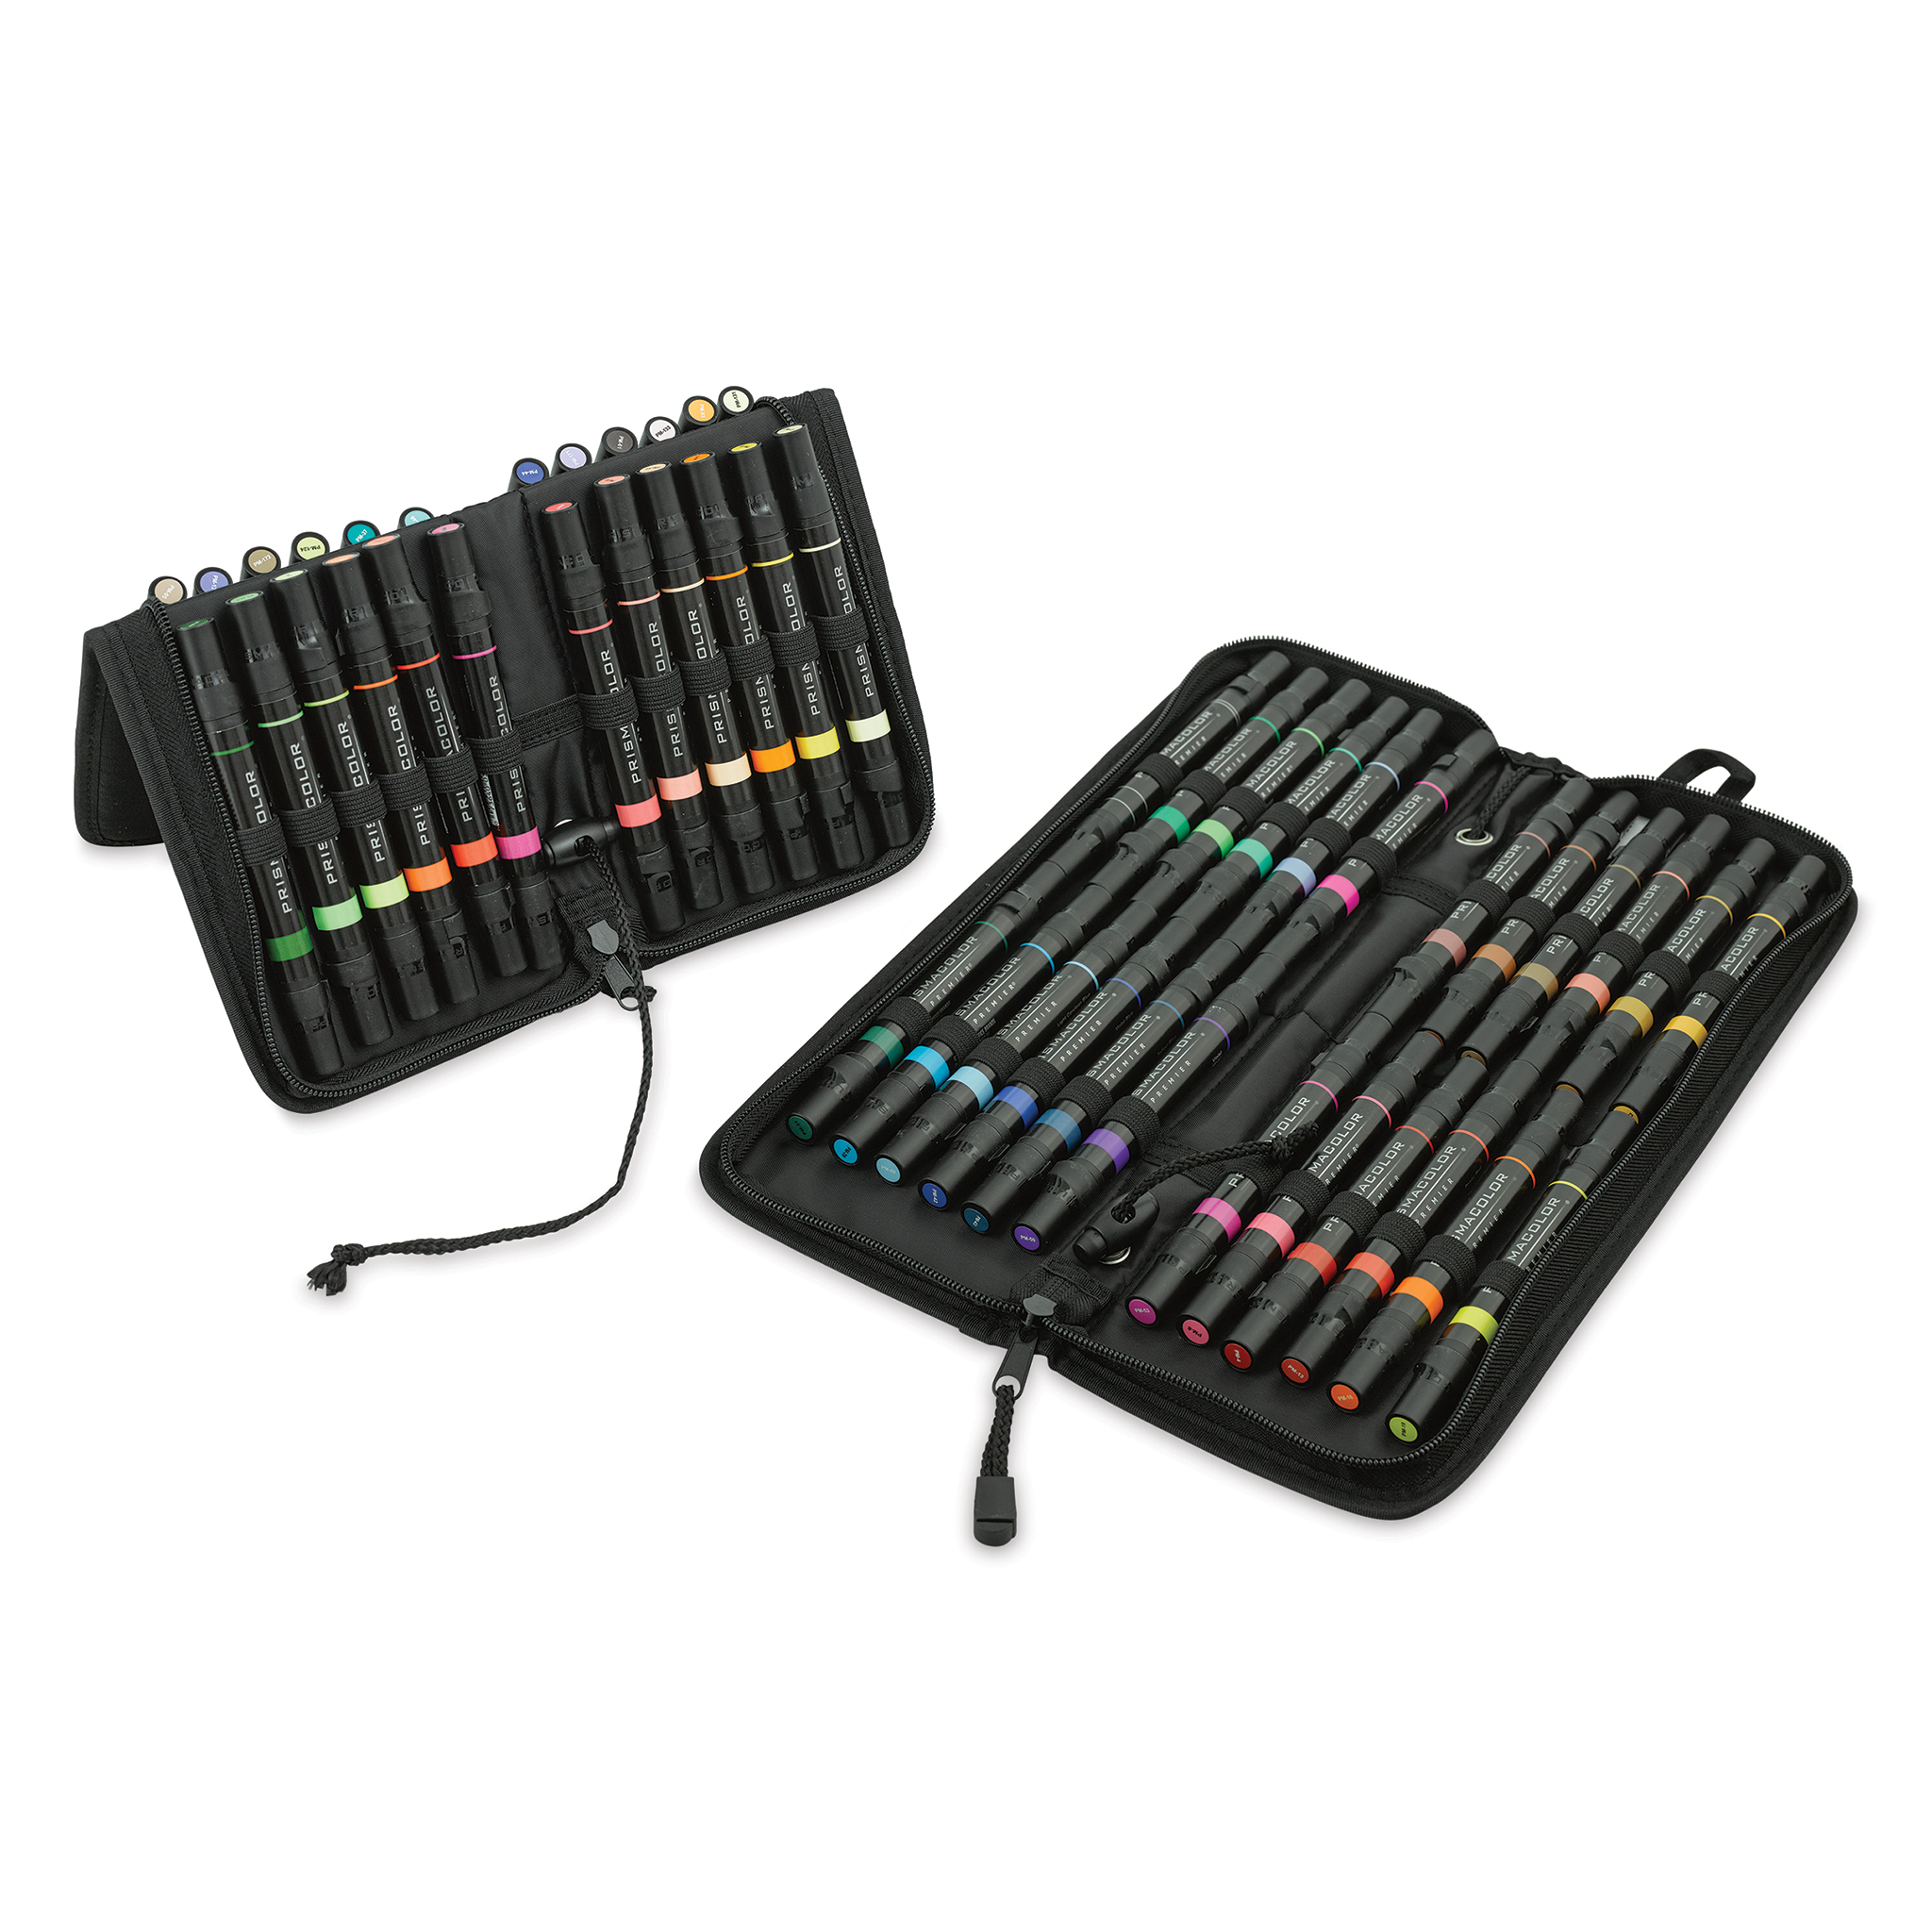 Prismacolor Premier Dual-Ended Art Marker Set - Assorted Colors, Set of 156